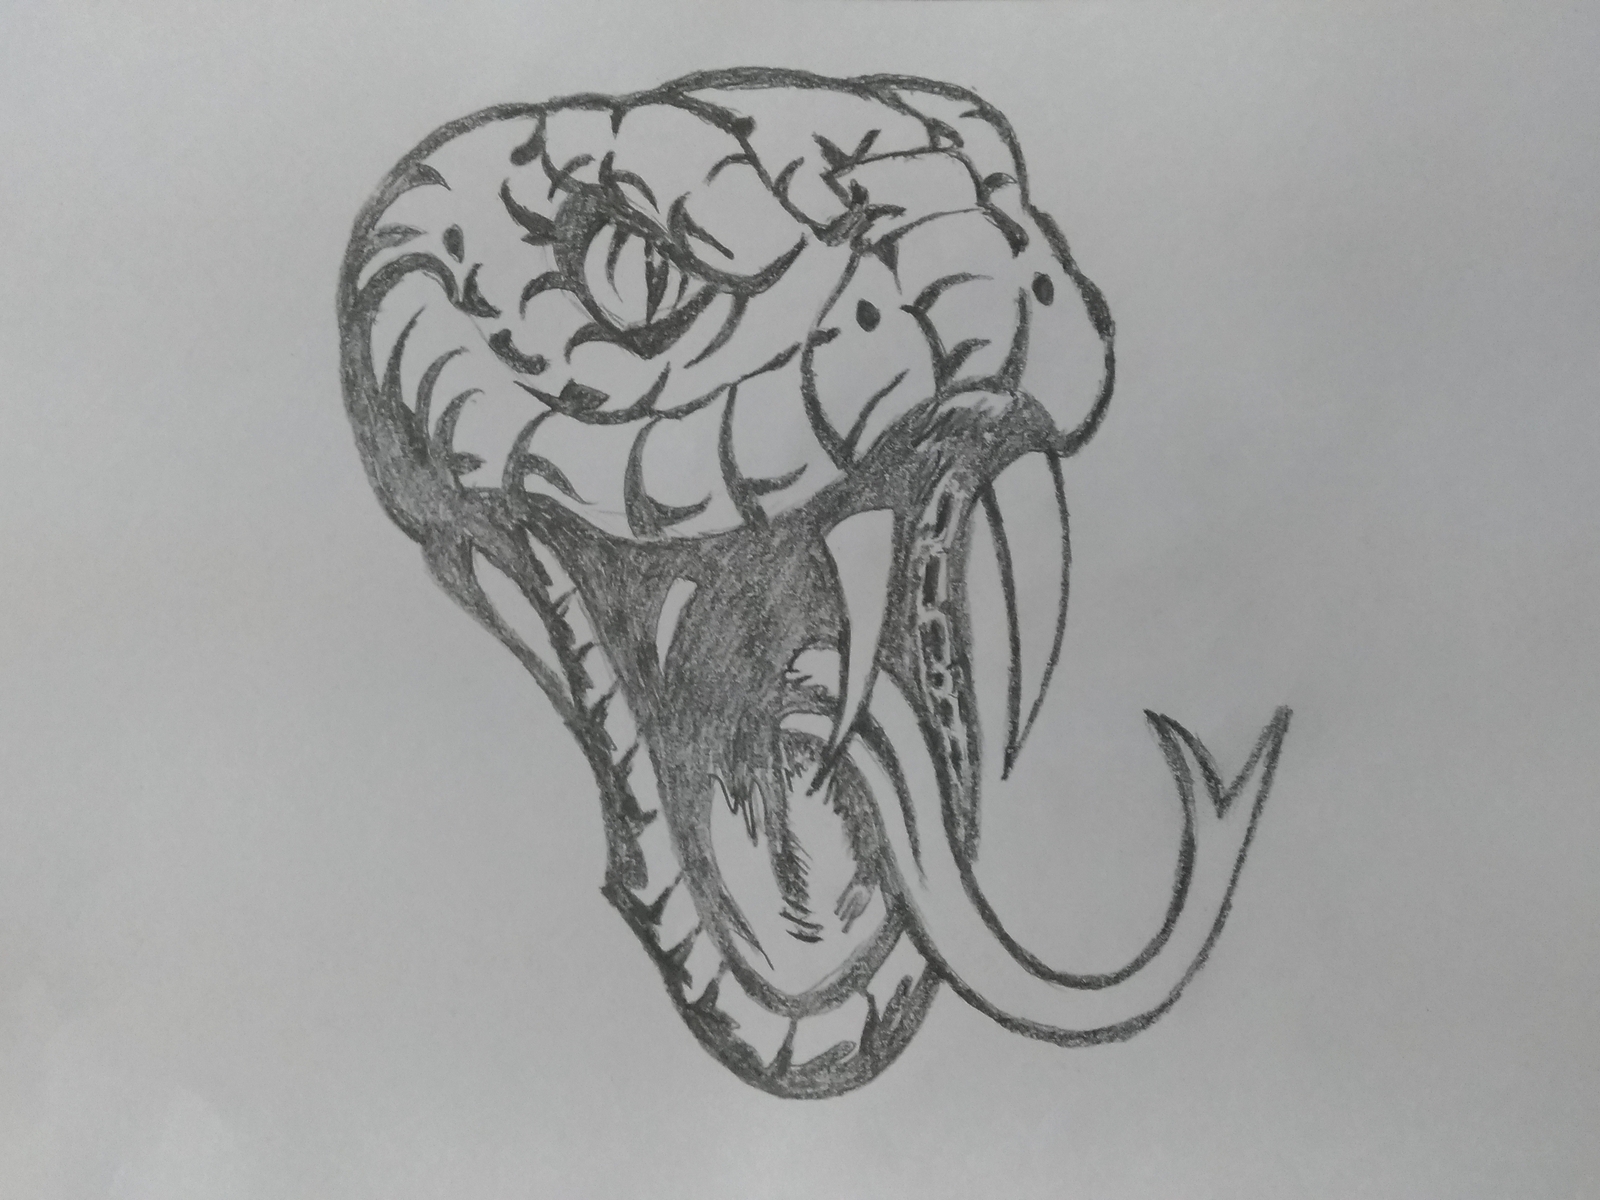 Snake Head Art by MLSPcArt on Dribbble